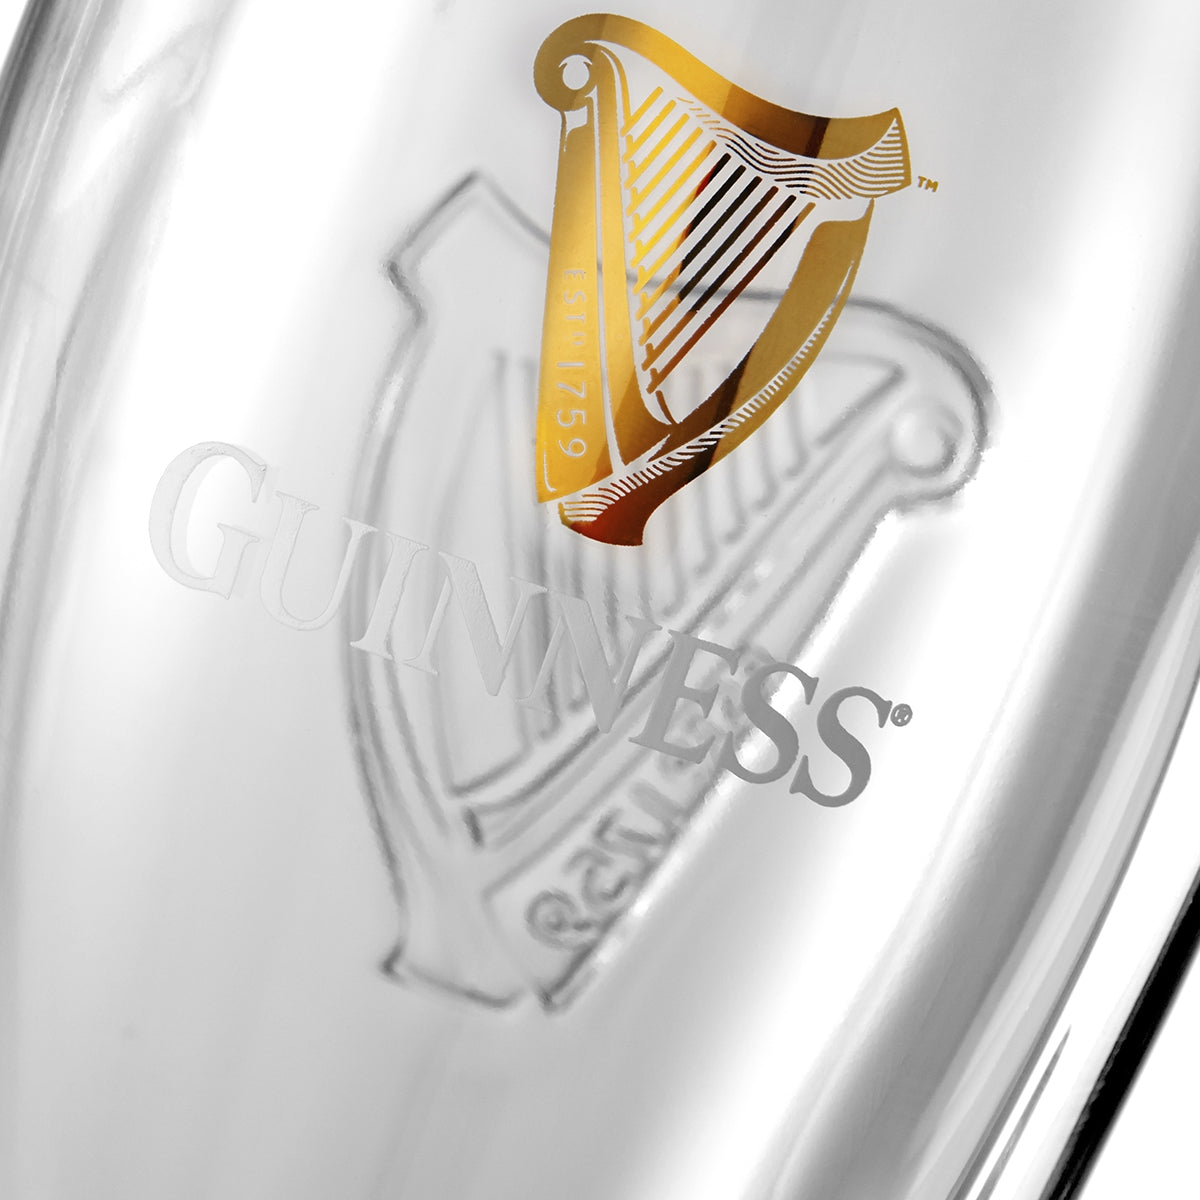 Guinness Pint Glass - 6 Pack